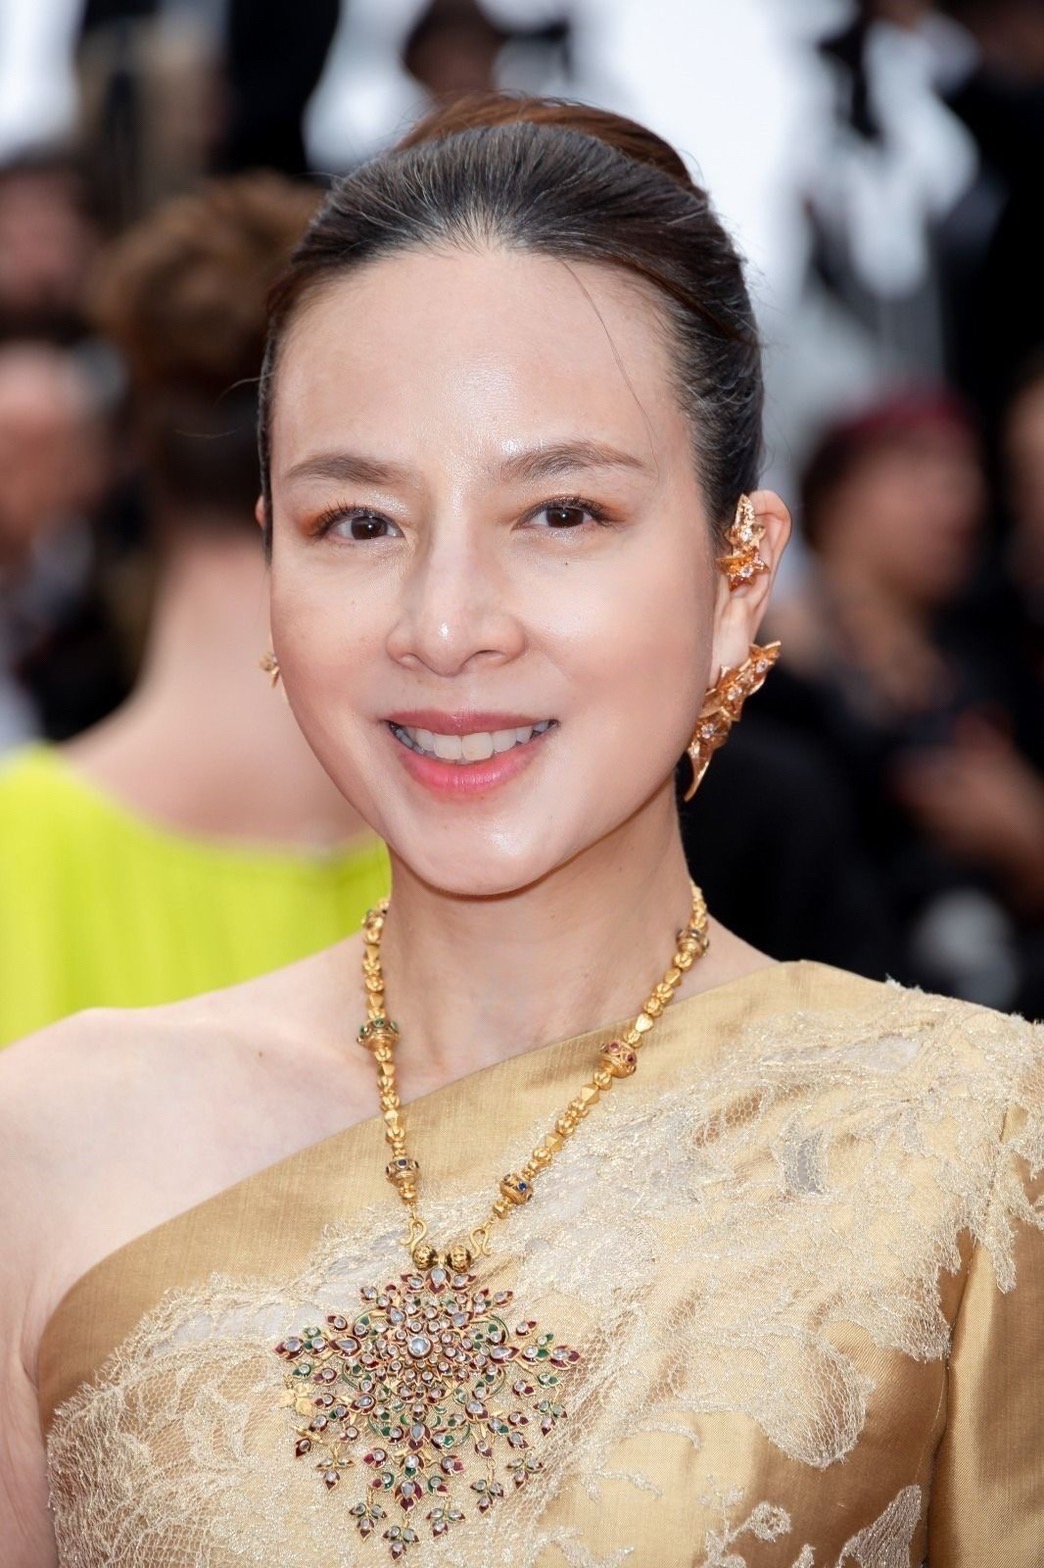 “มาดามแป้ง” นวลพรรณ ล่ำซำ ซีอีโอ บมจ. เมืองไทยประกันภัย และผู้จัดการทีมฟุตบอลชาติไทย เฉิดฉายในชุดผ้าไหมไทย ในเทศกาลหนังเมืองคานส์ ครั้งที่ 76 หรือ Festival de Cannes 2023